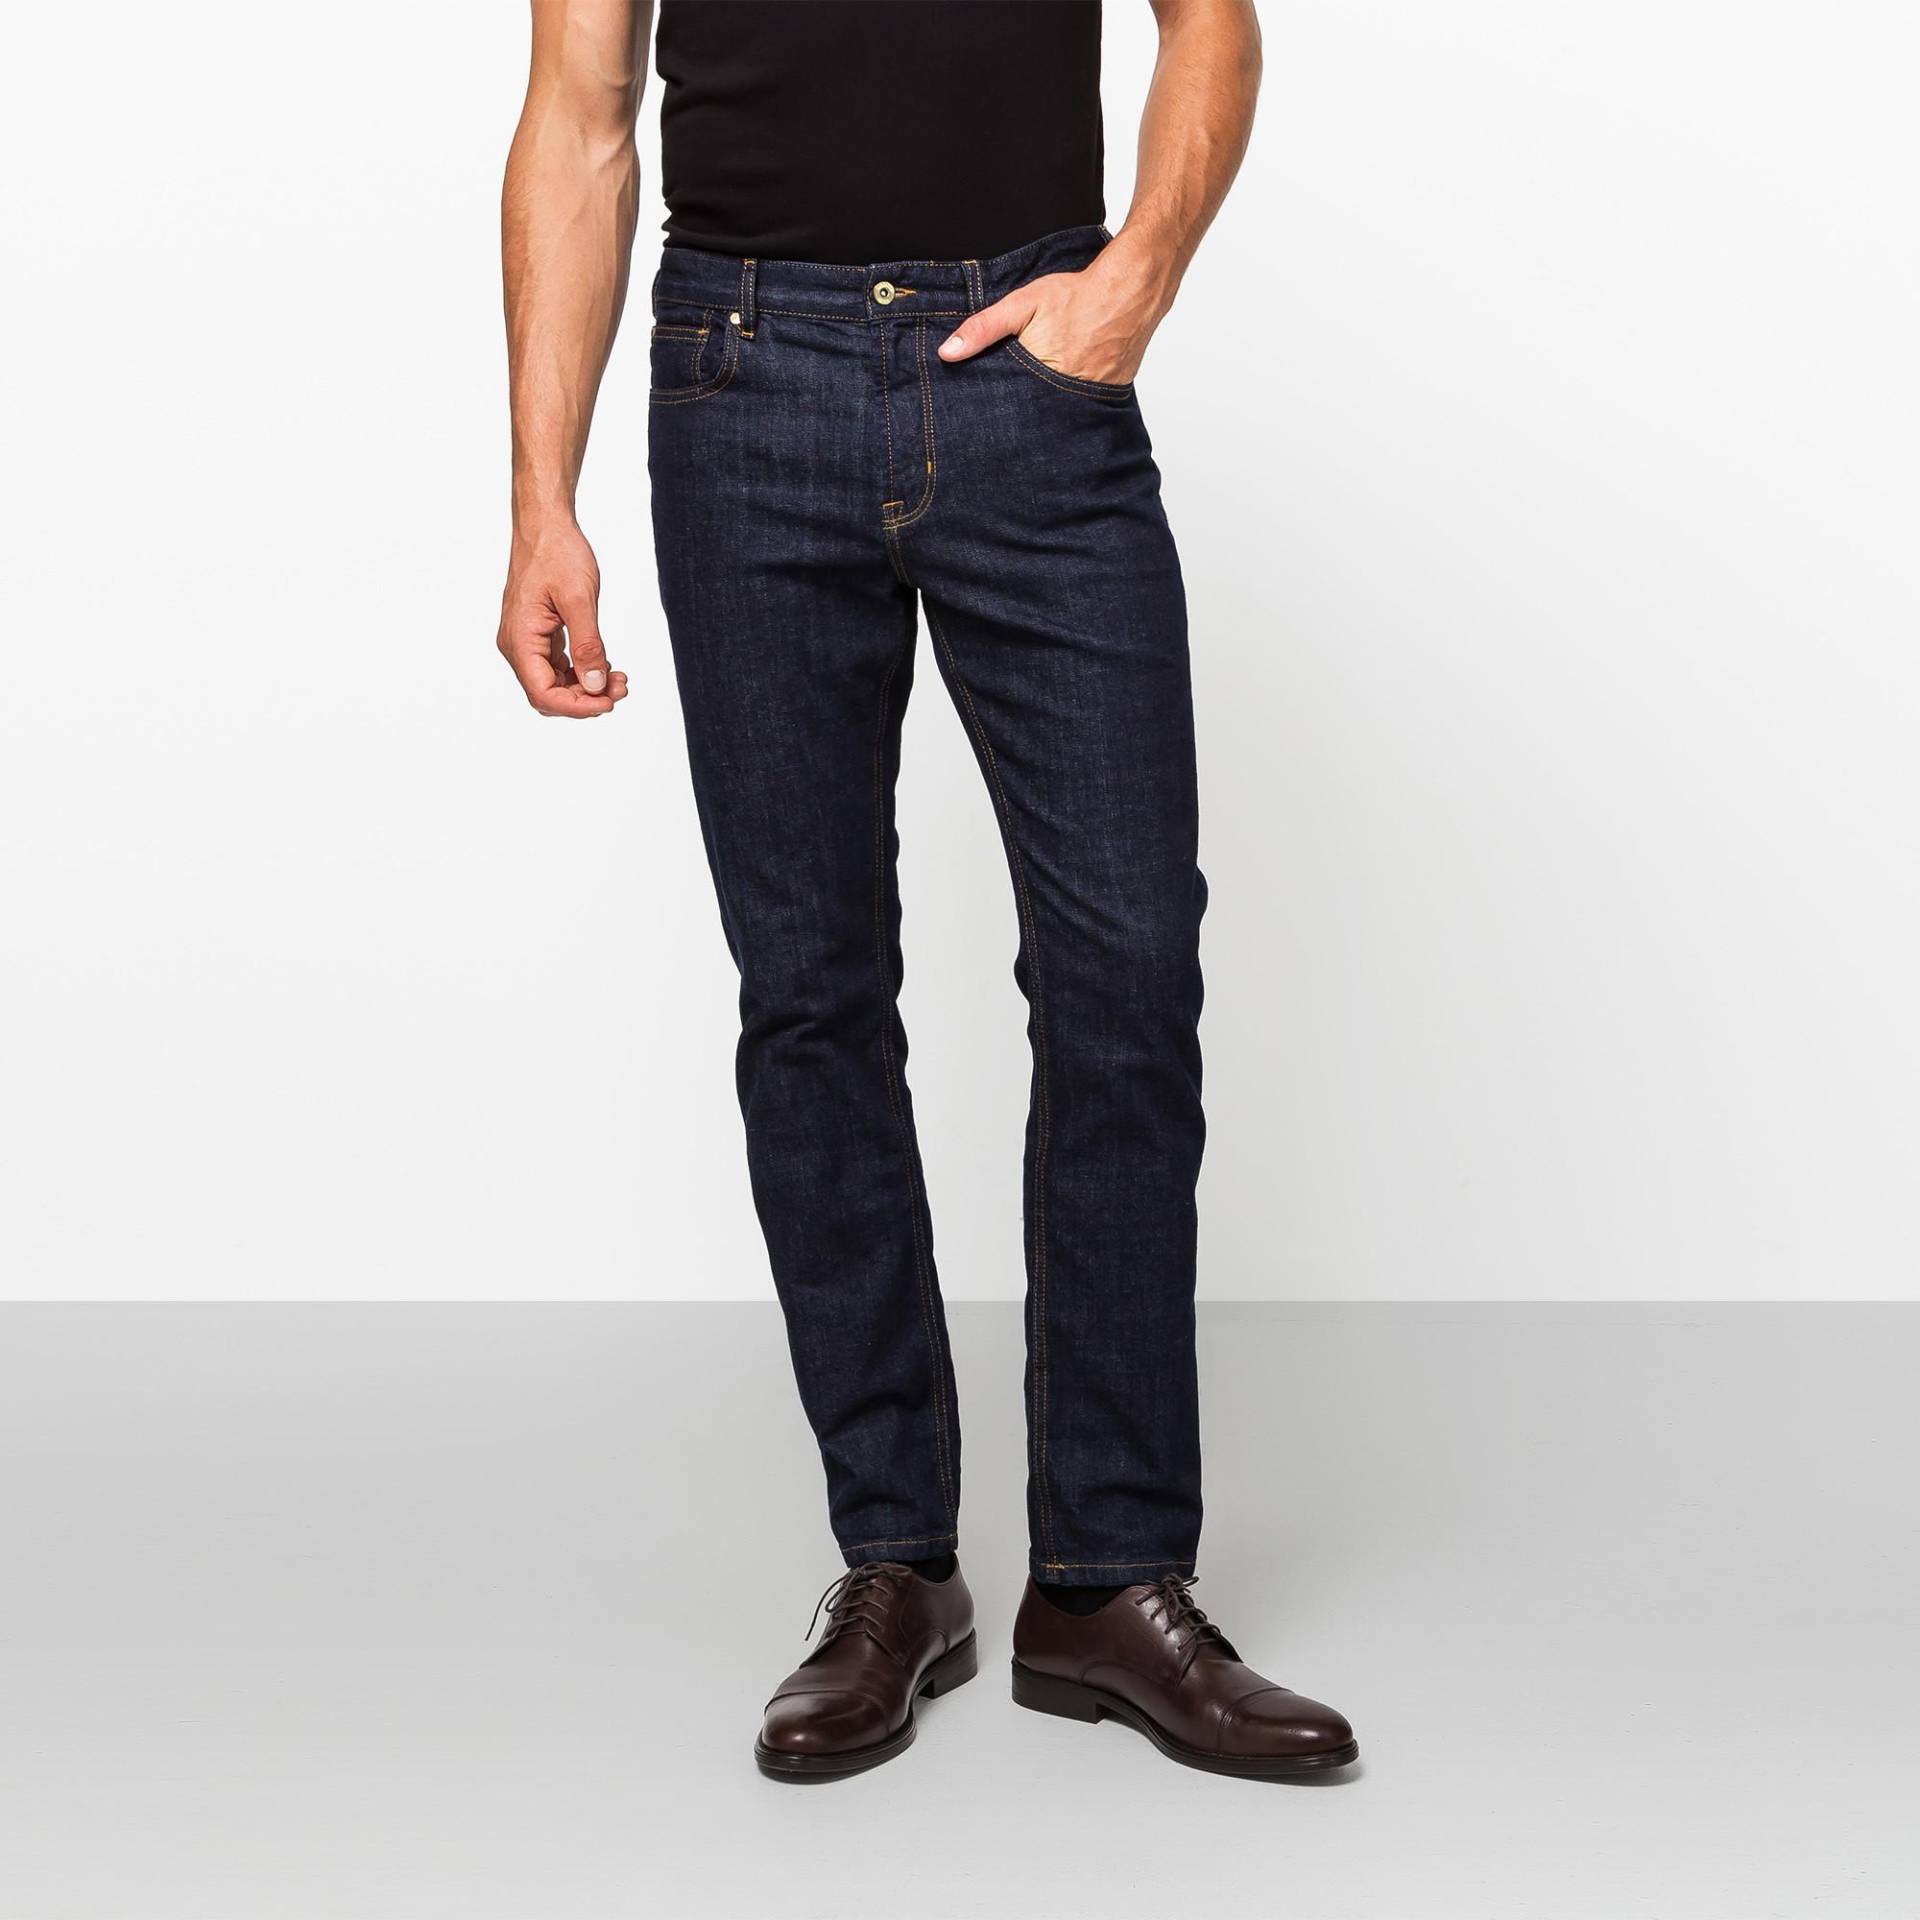 Jeans, Slim Fit Herren Blau Denim Dunkel L32/W31 von Manor Man